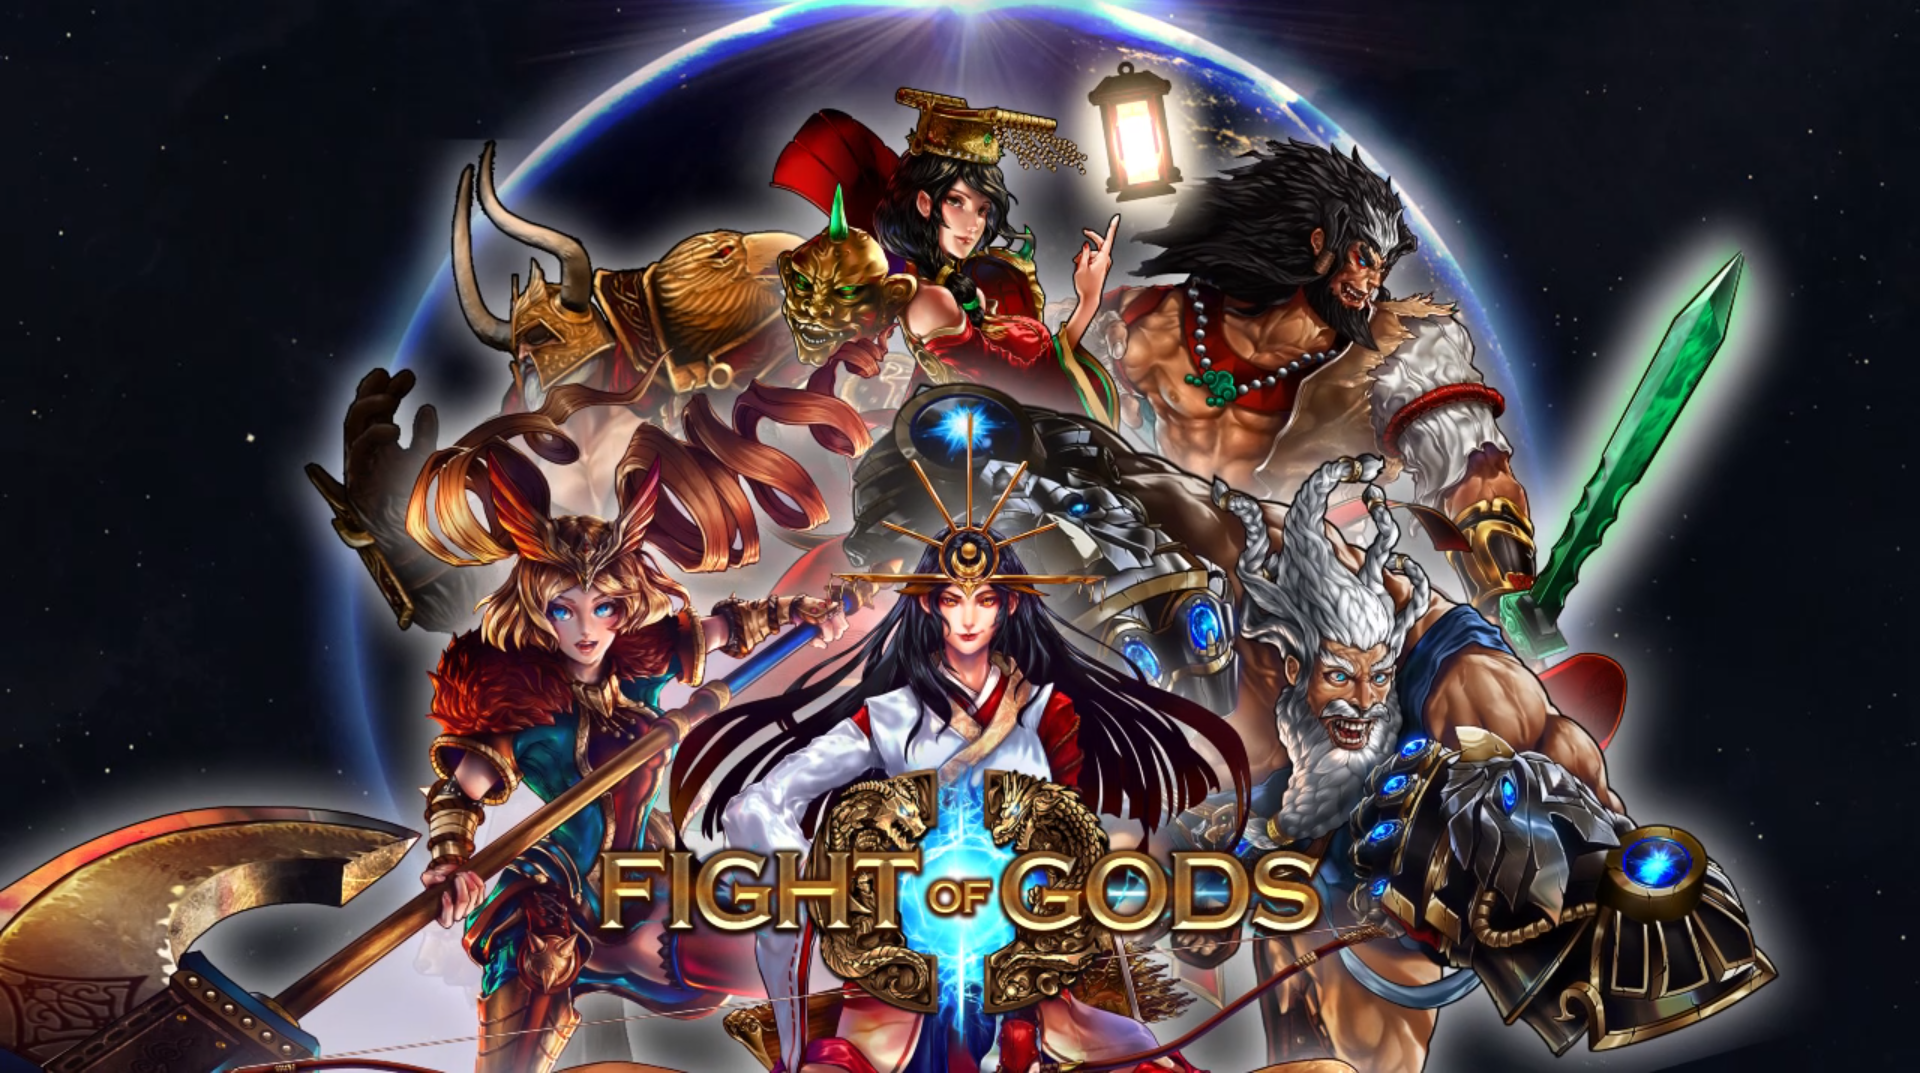 神々の格闘ゲーム Fight Of Gods のps4版が配信開始 Pc版発売当時からキャラクターデザインを調整